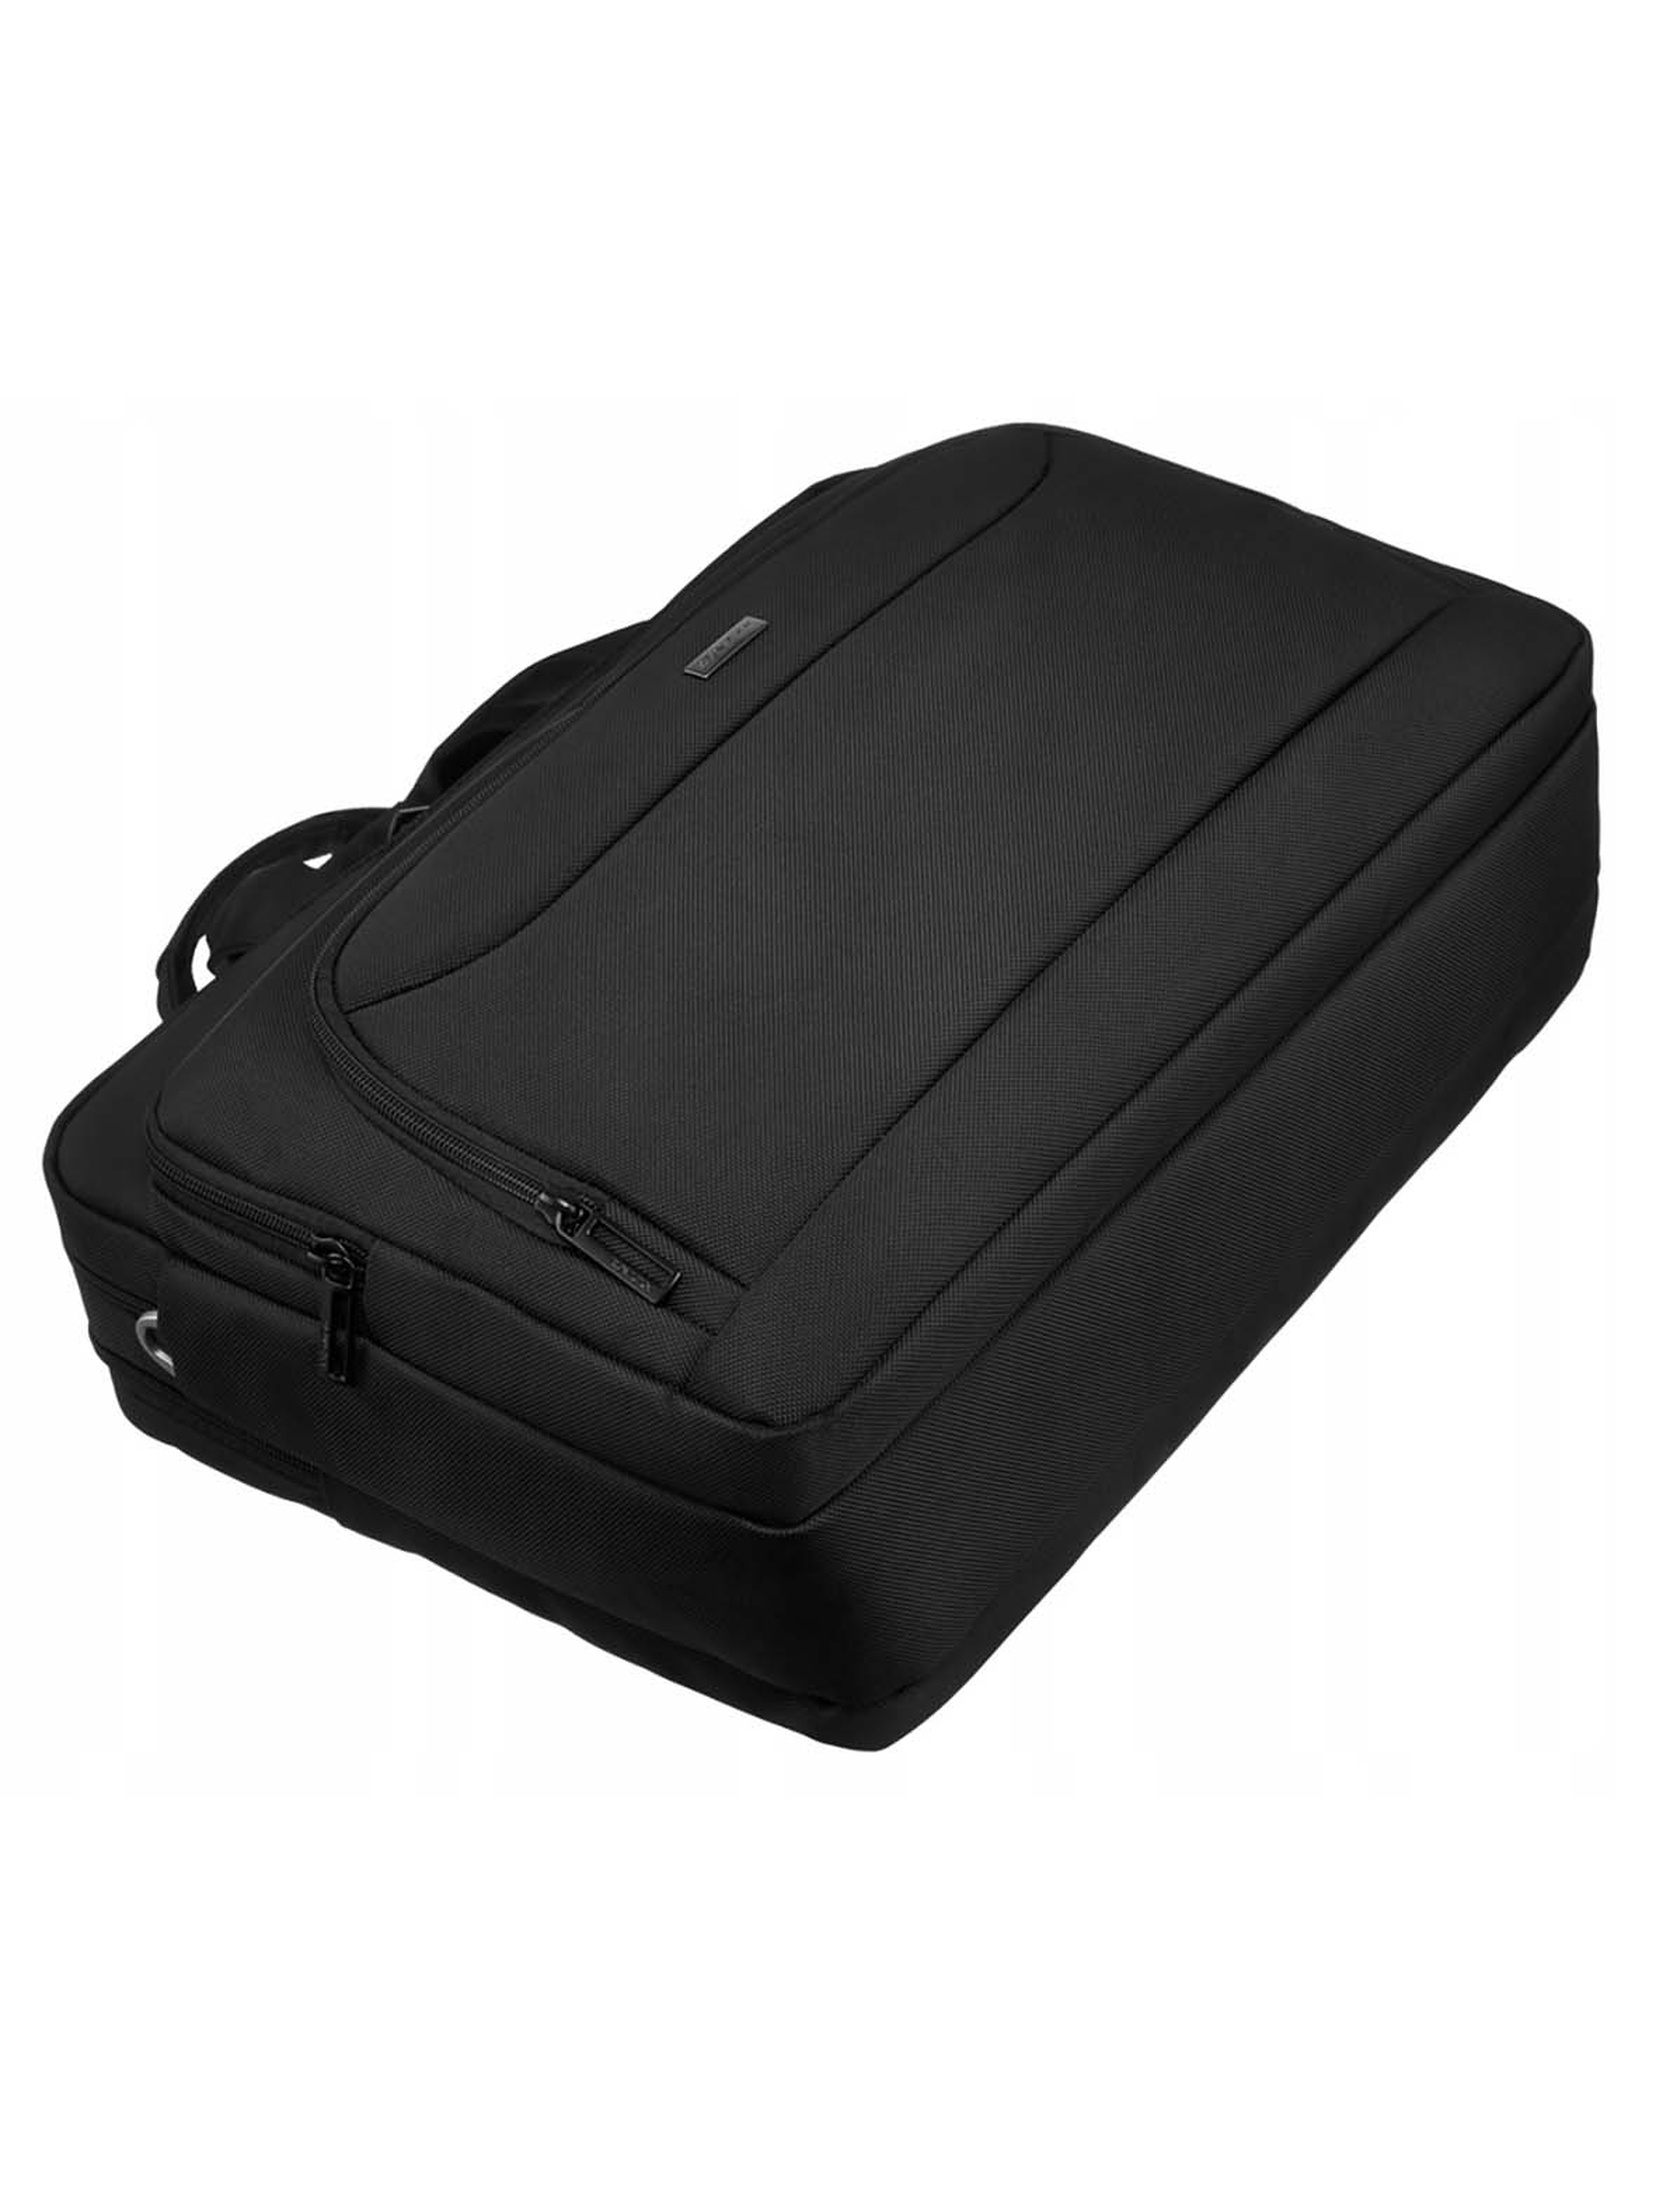 Biznesowy torboplecak na laptopa czarny - Rovicky